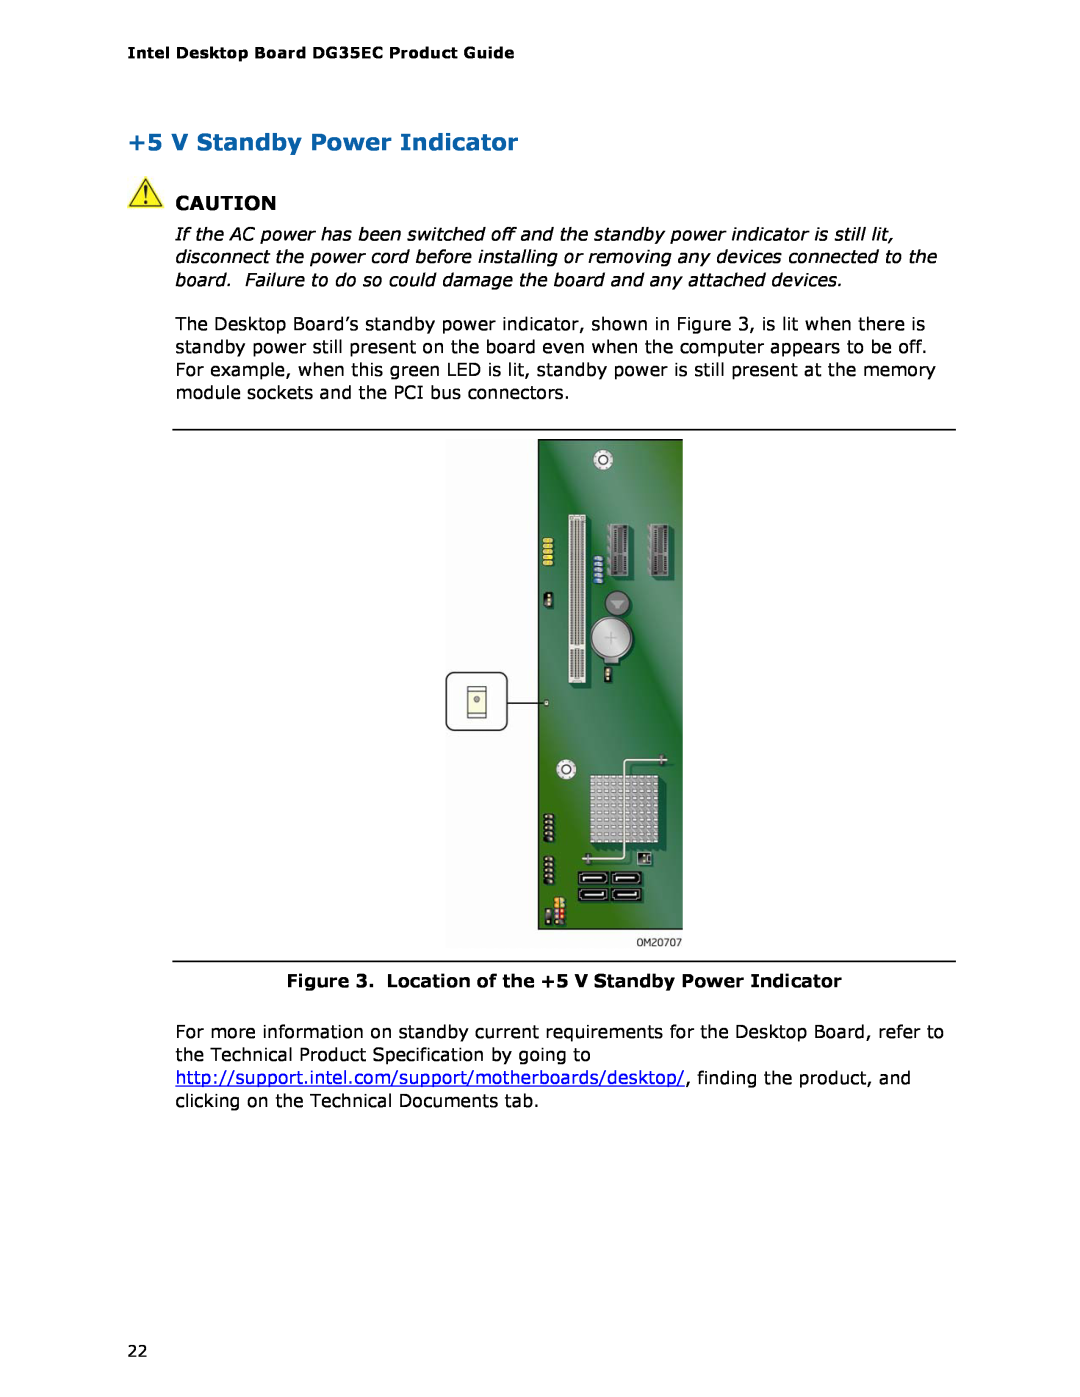 Intel Intel Desktop Board, DG35EC manual Location of the +5 V Standby Power Indicator 